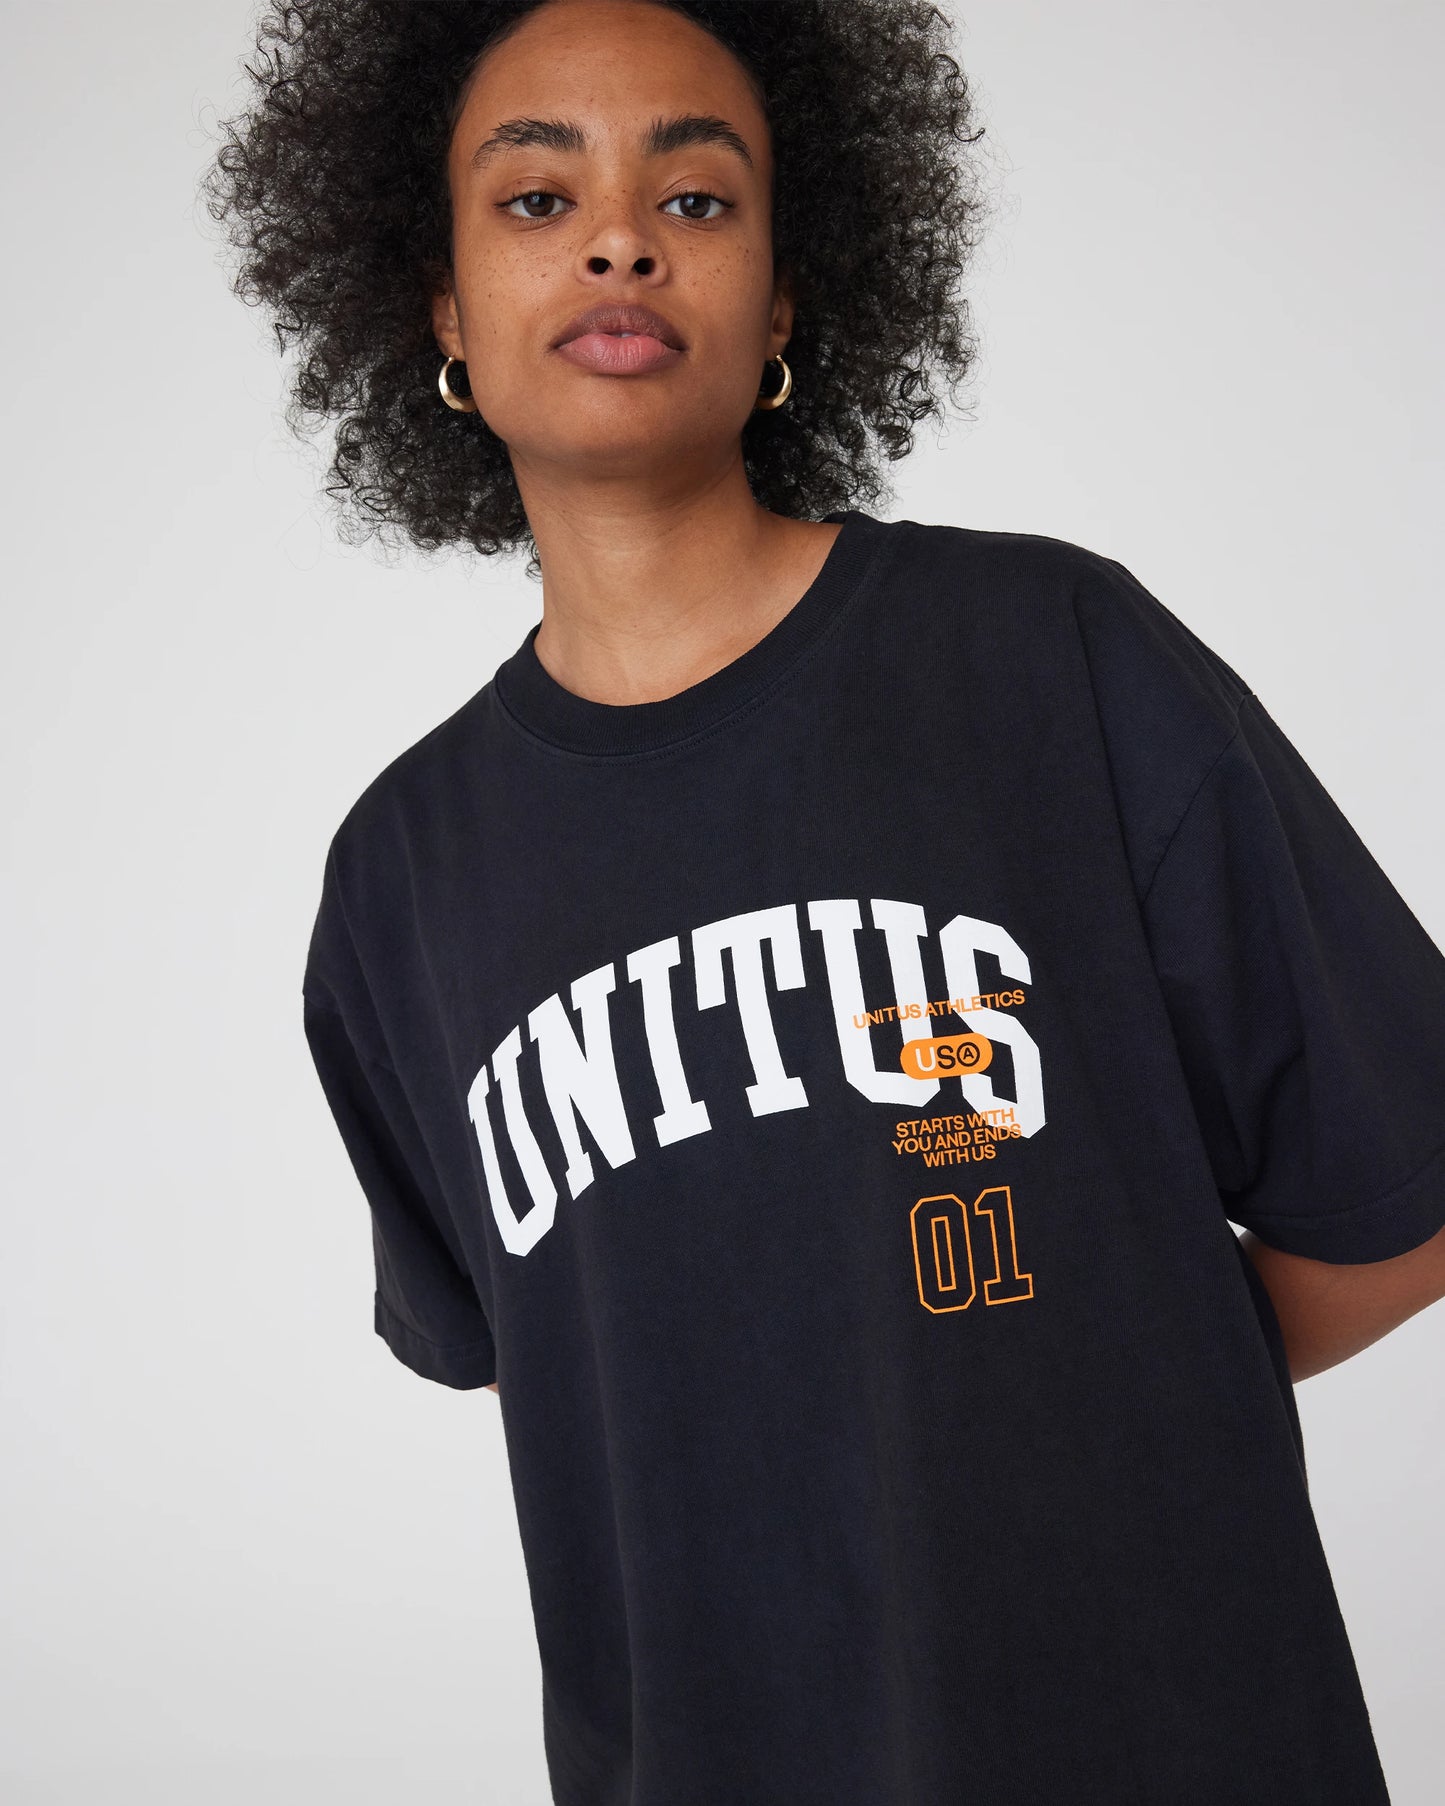 UNITUS US 01 Tee